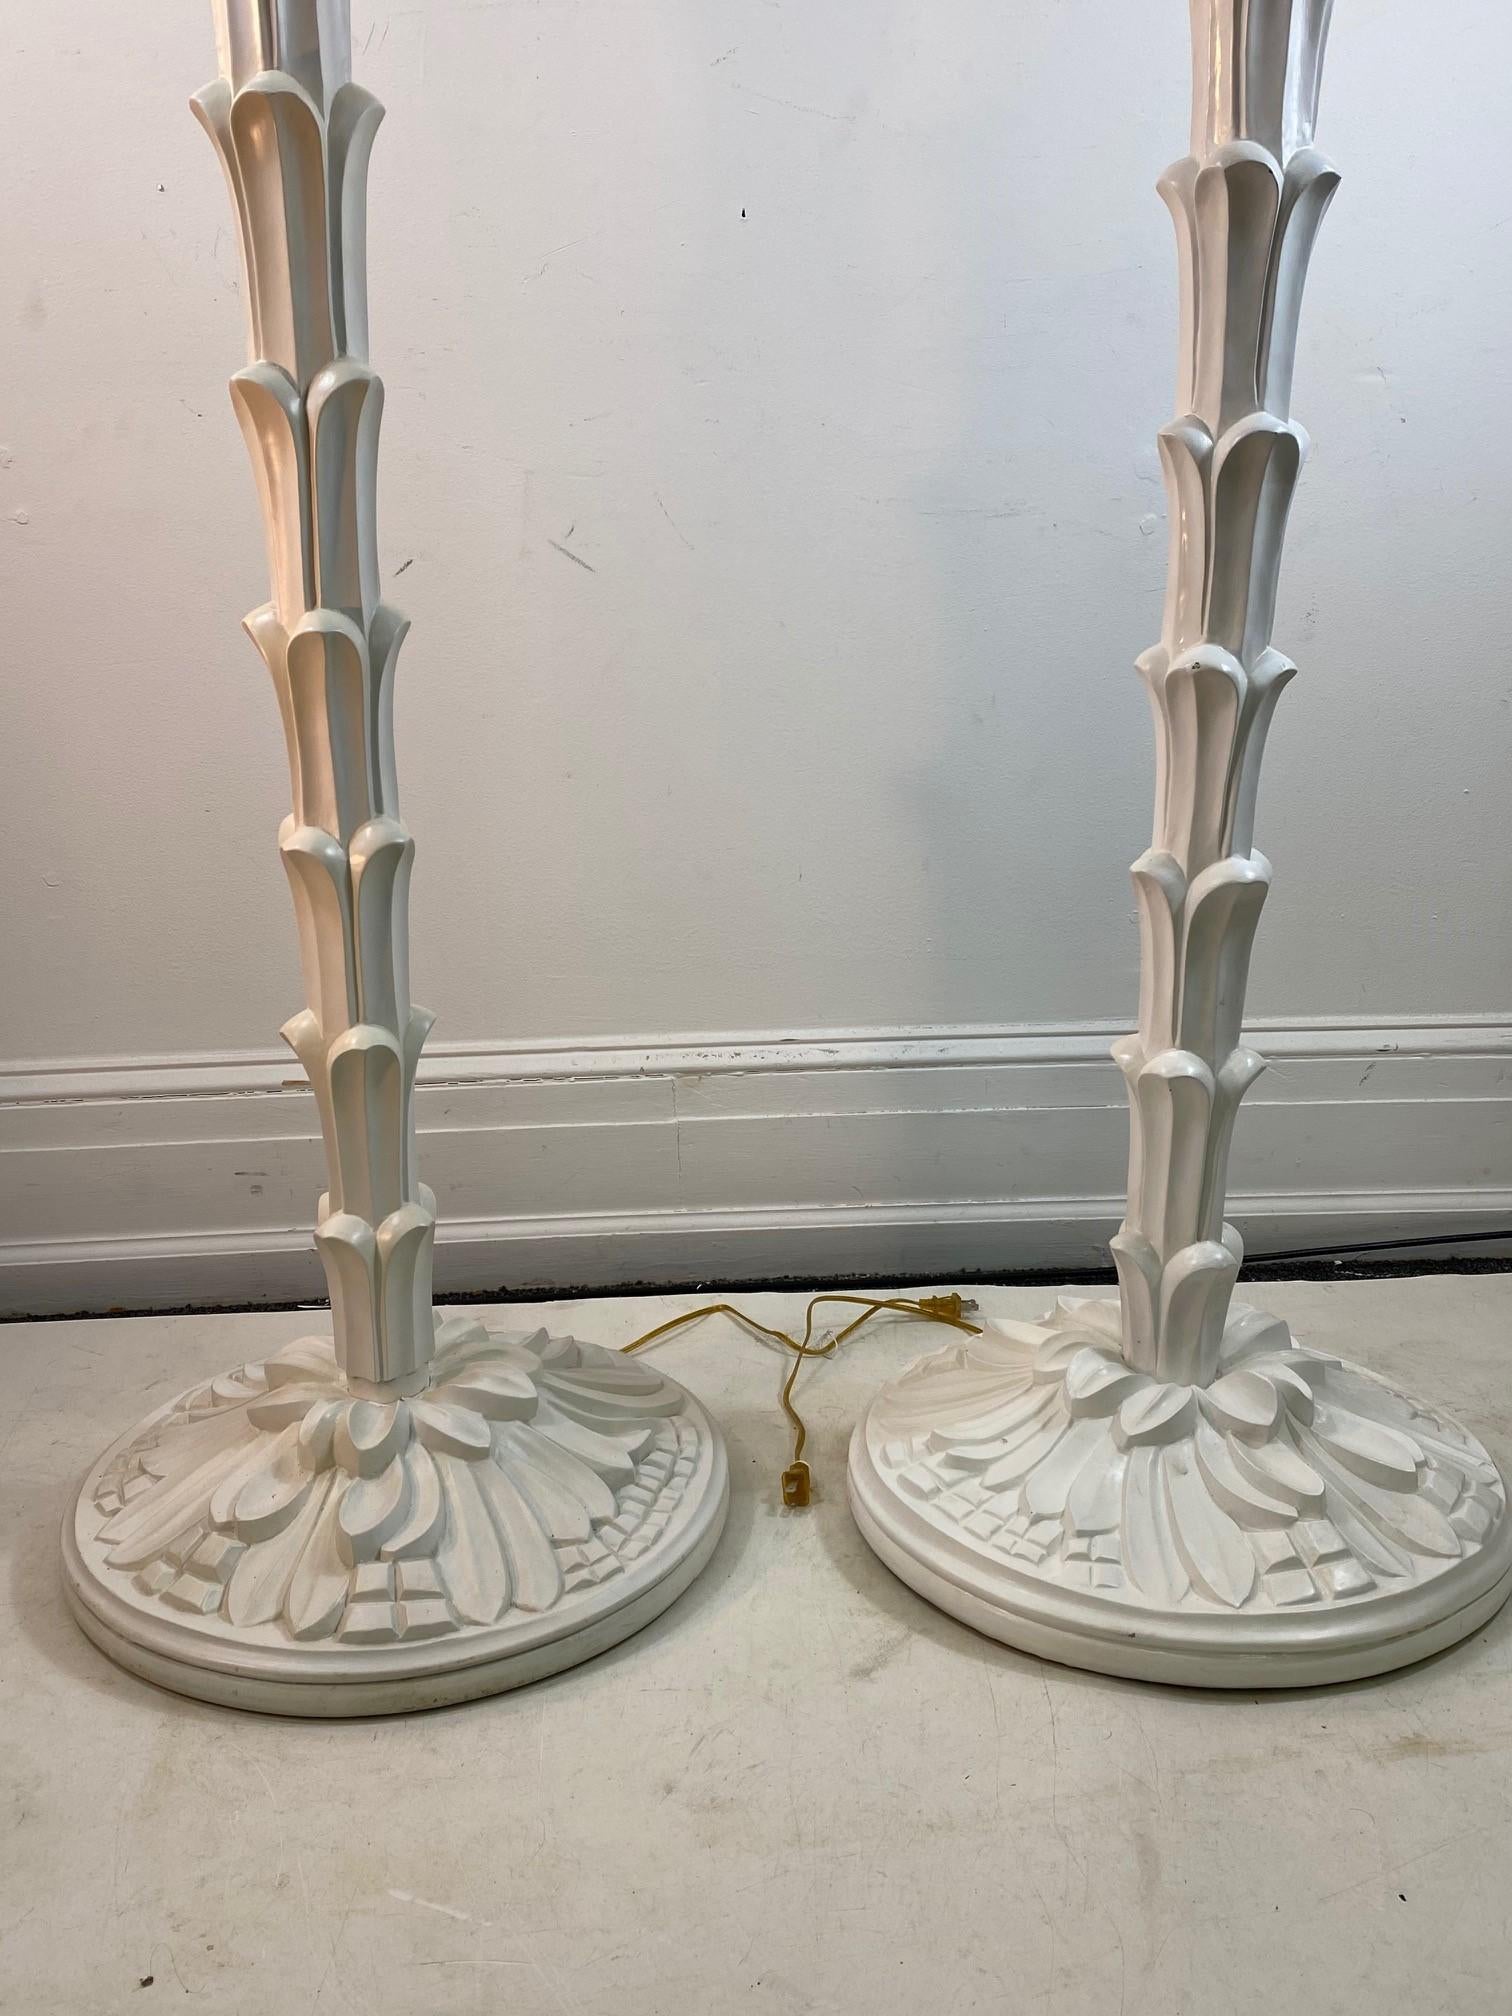 Französische moderne Torchère-Stehlampen im Stil von Serge Roche. Das Paar ist aus geschnitztem und bemaltem Holz handgefertigt und stammt aus dem frühen 21. Jahrhundert. In tollem Vintage-Zustand mit altersgemäßer Abnutzung und Gebrauch.